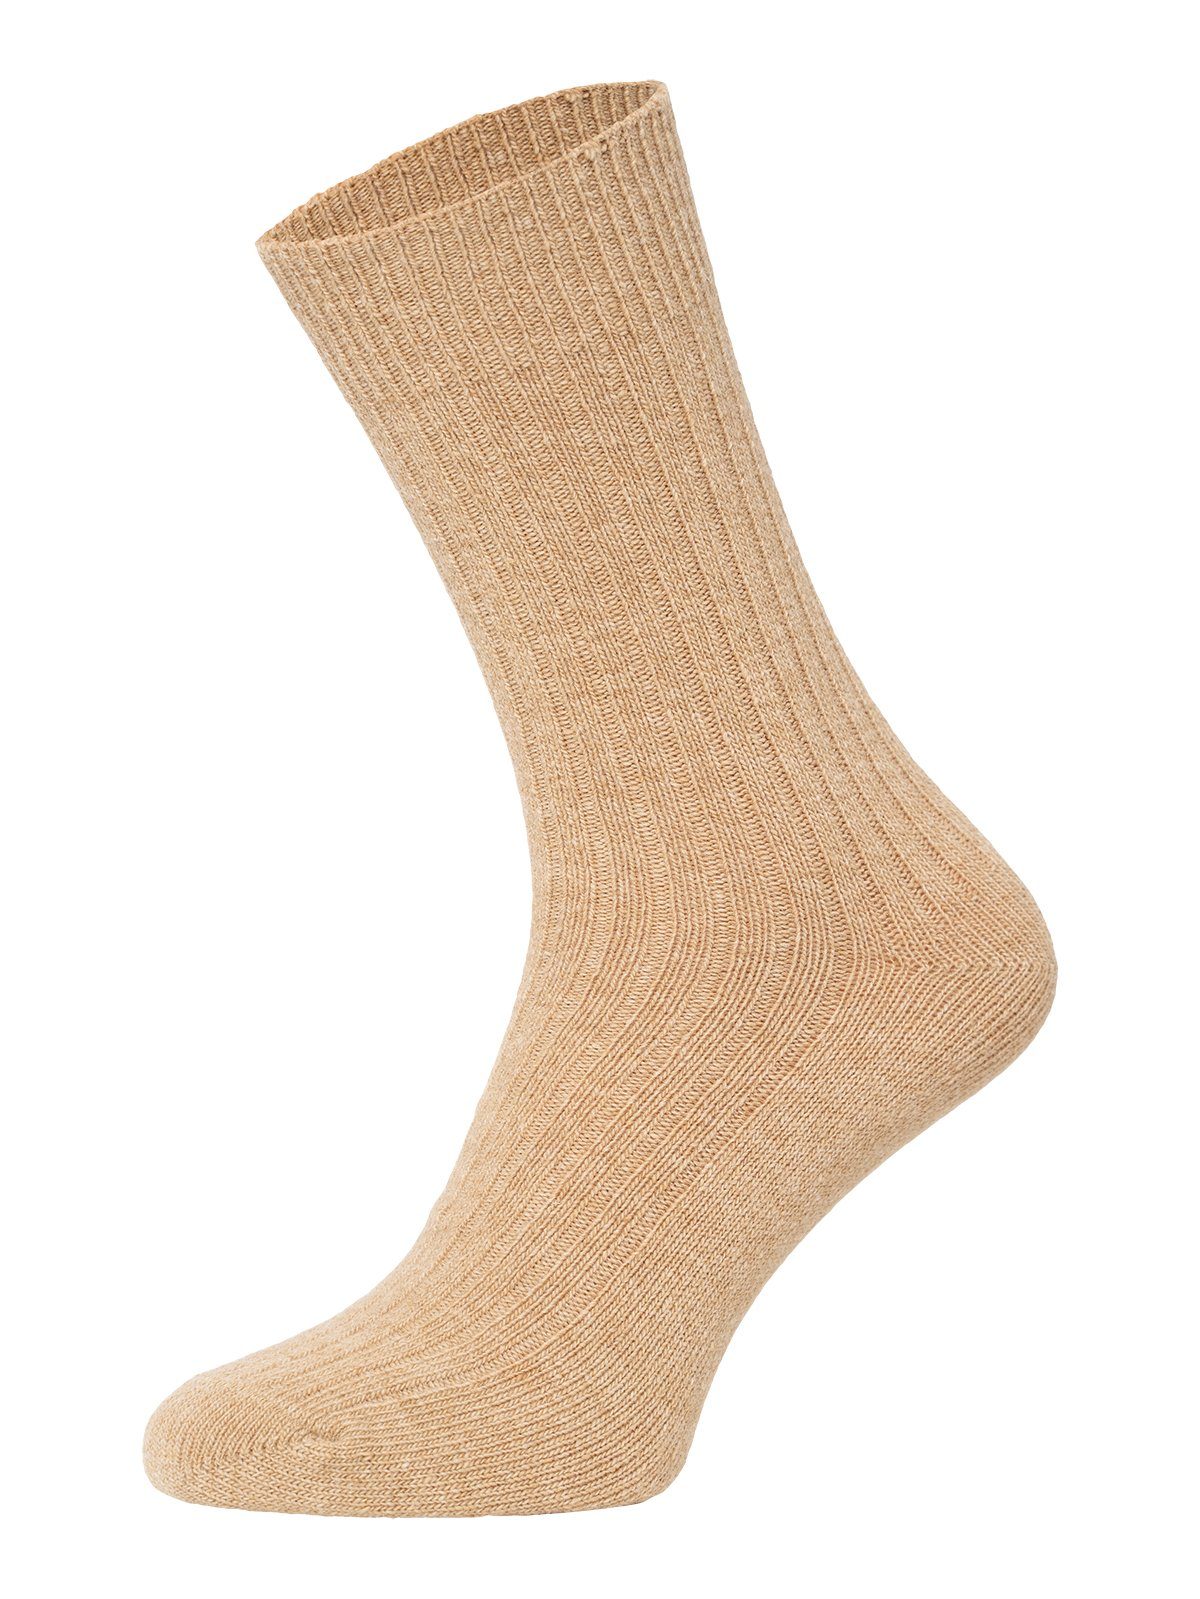 HomeOfSocks Socken Dünne Bunte Wollsocken mit 72% Wollanteil Hochwertige Uni Wollsocken Dünn Bunt Druckarm Hellbraun